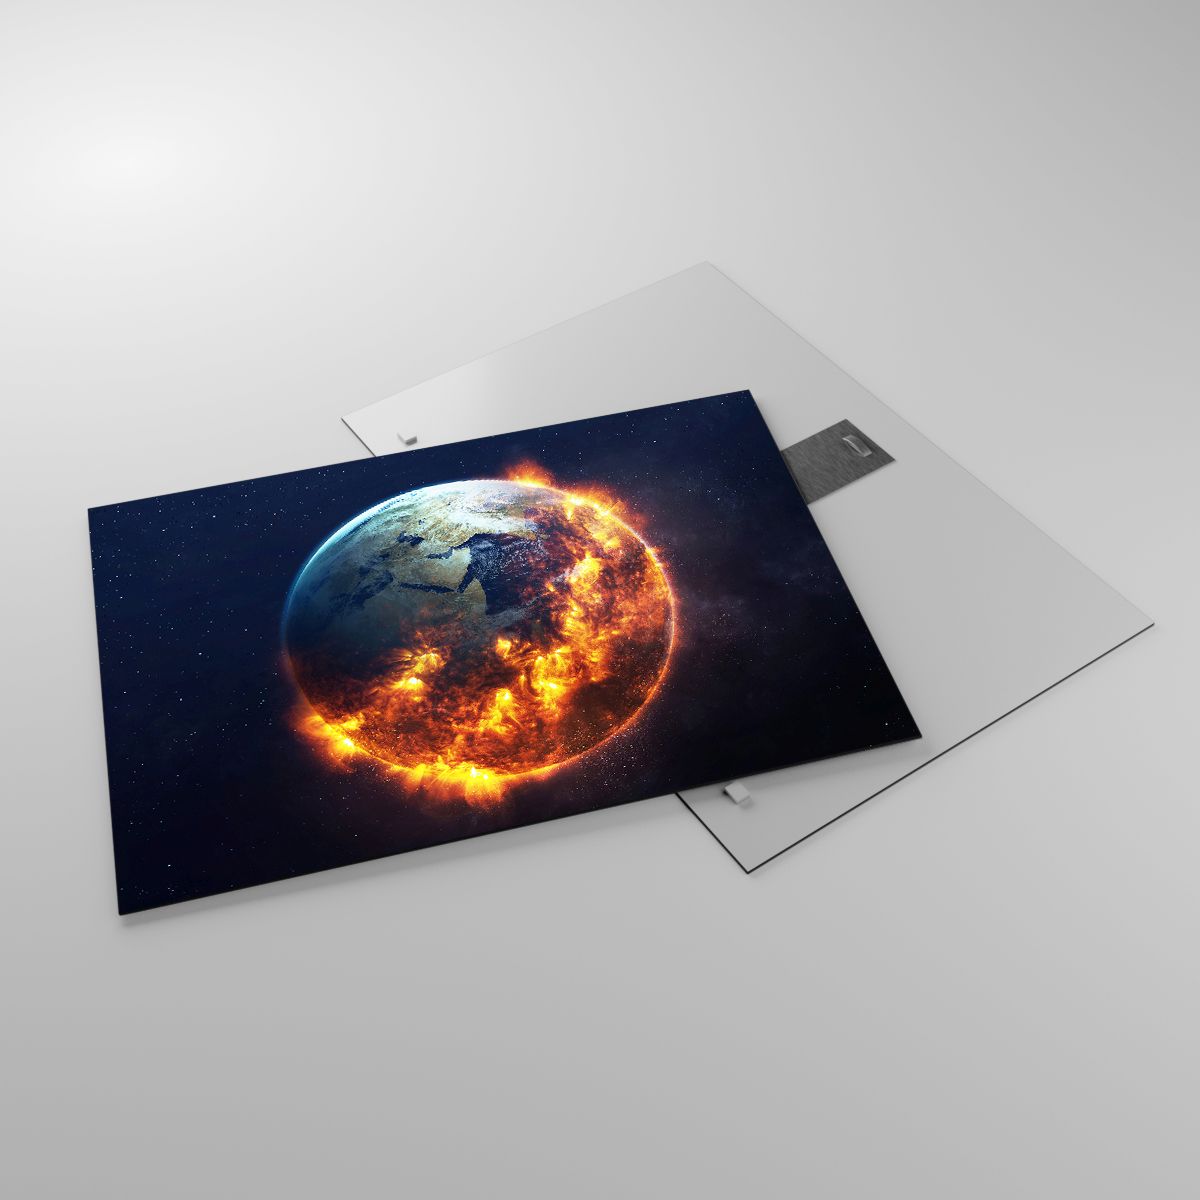 Glasbild Kosmos, Glasbild Planet Erde, Glasbild Feuerflammen, Glasbild Globus, Glasbild Apokalypse